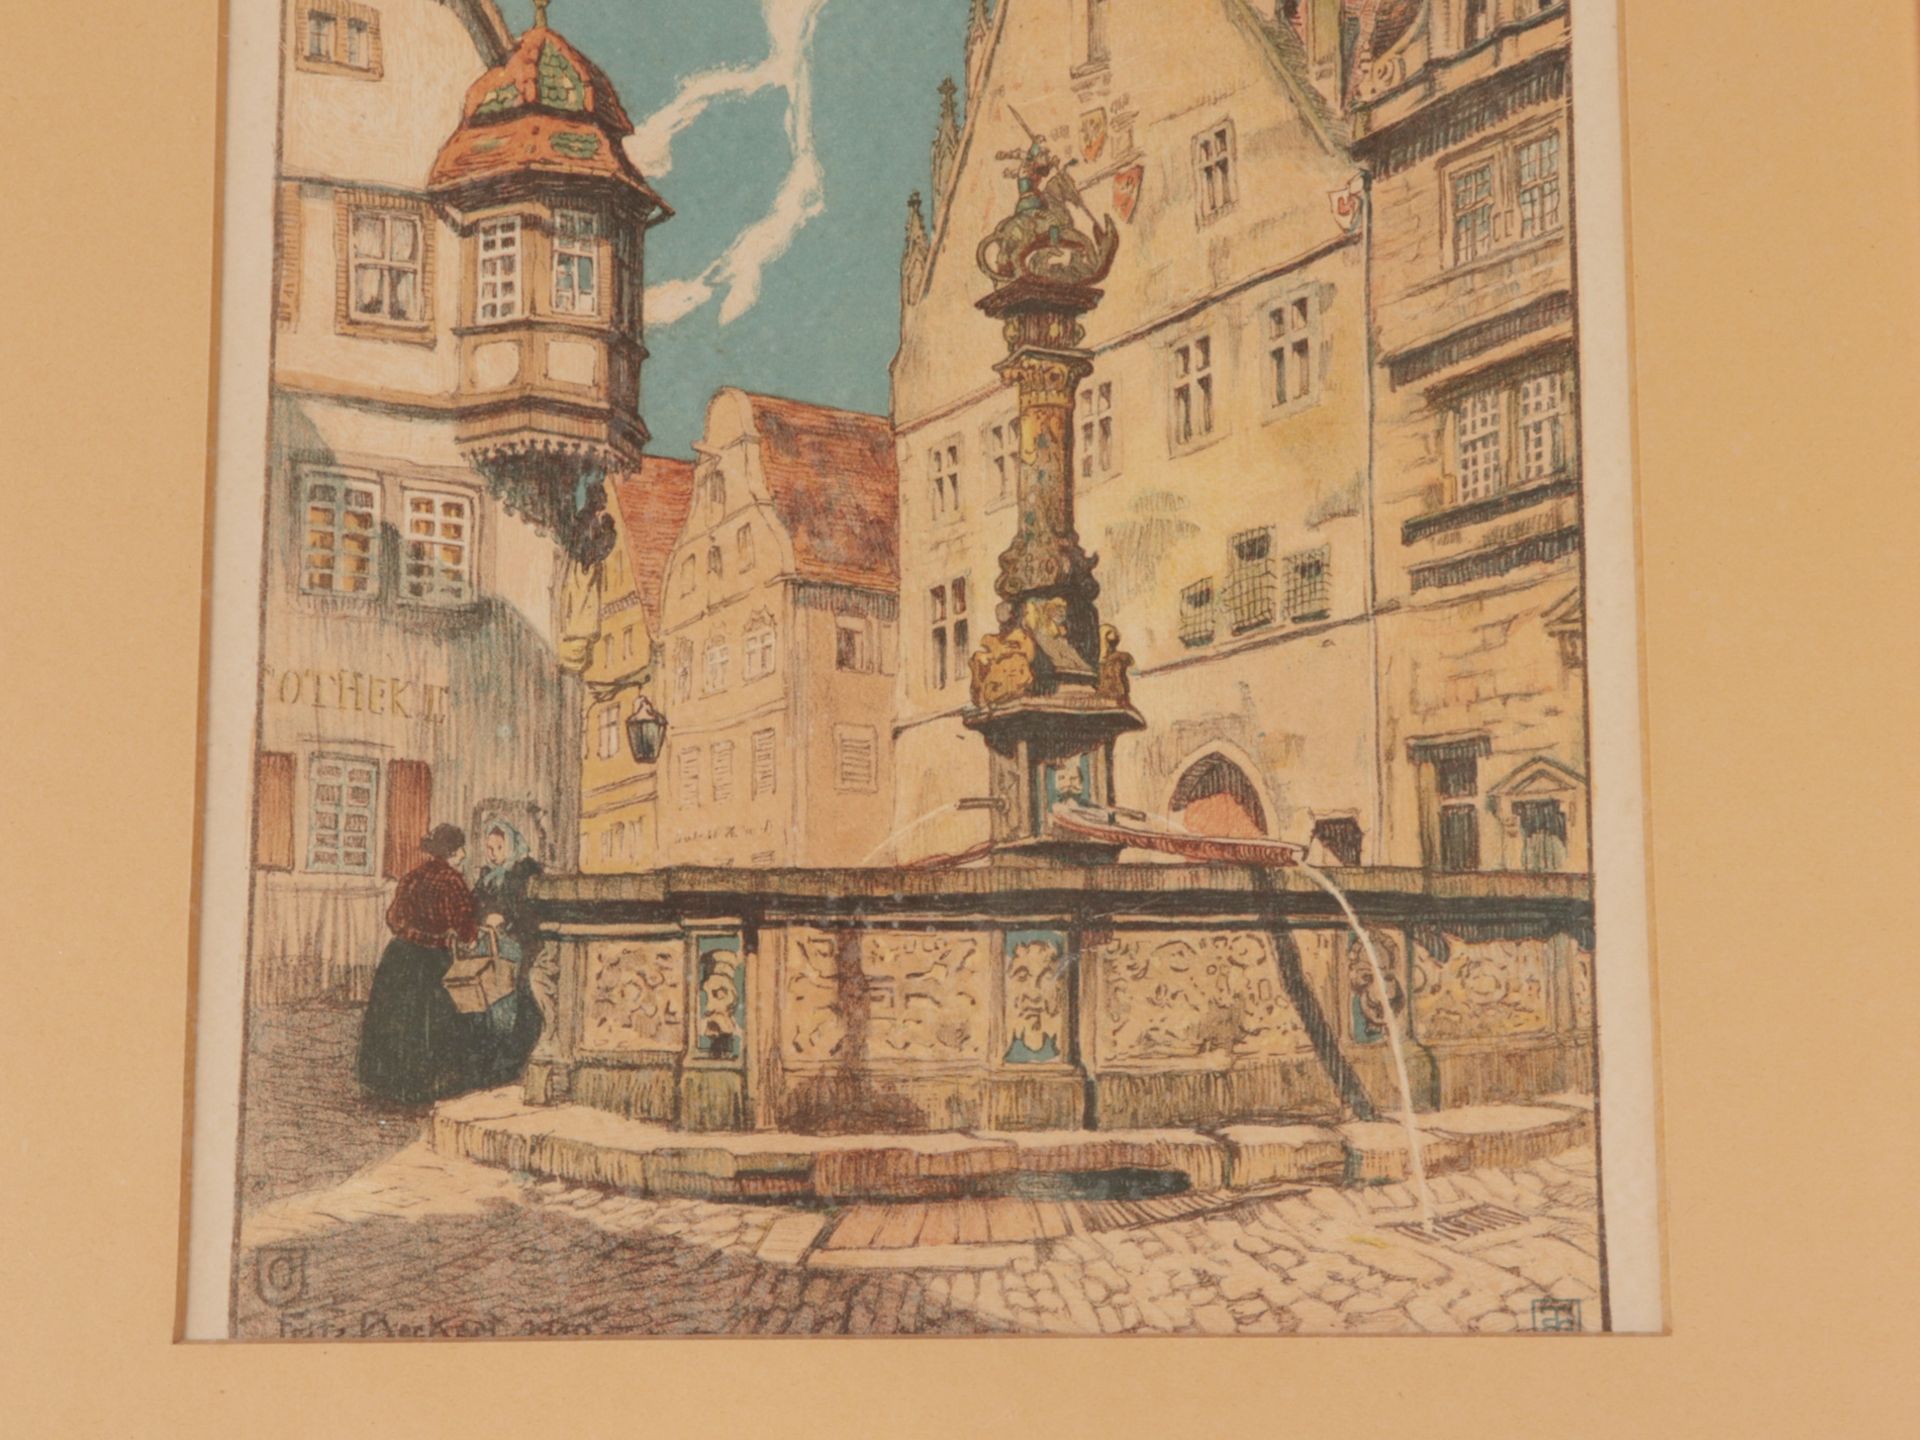 Rothenburg o.T. - Altstadt - Image 4 of 4